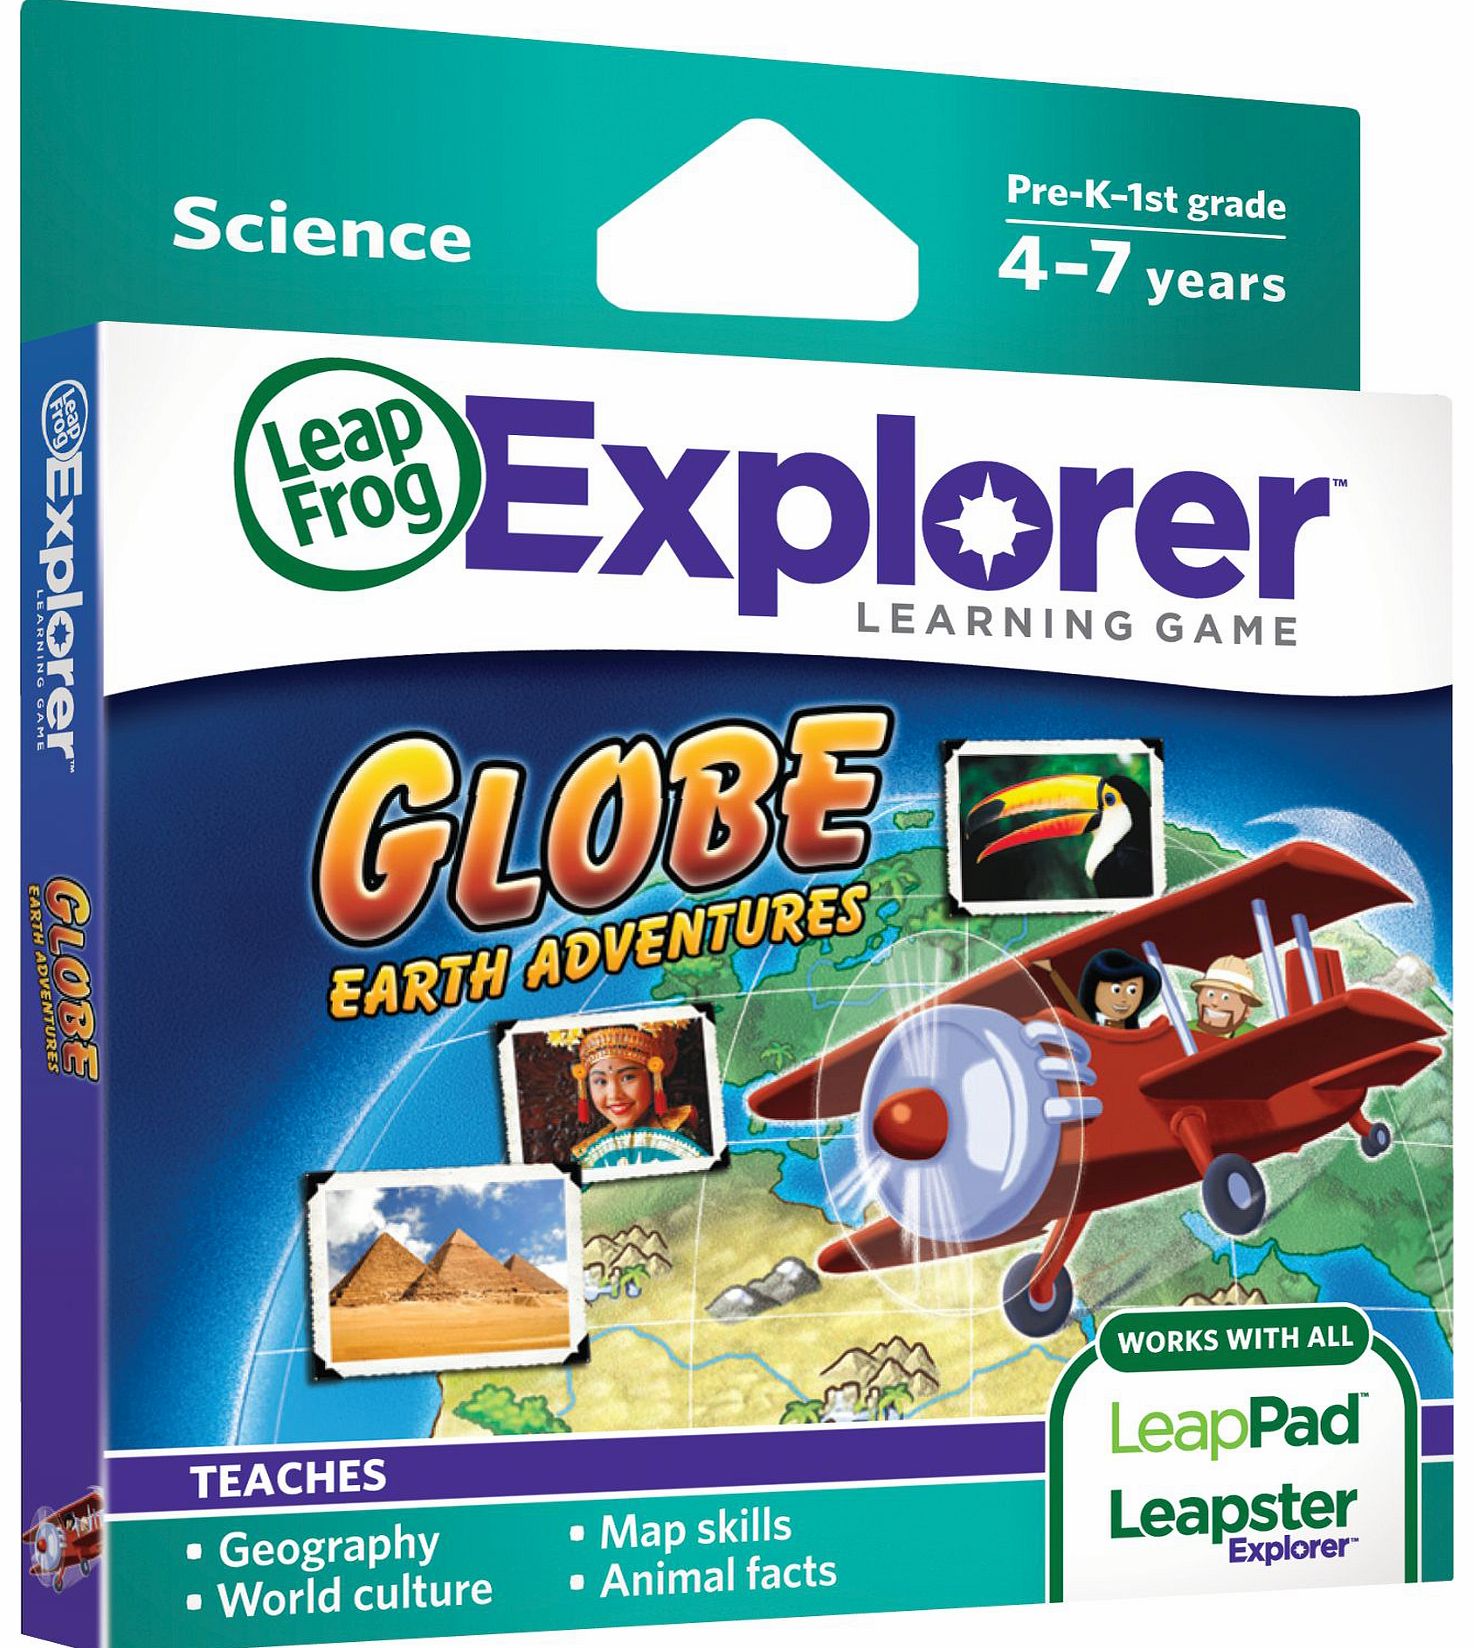 LeapFrog Explorer Learning Game - Globe: Earth Adventures